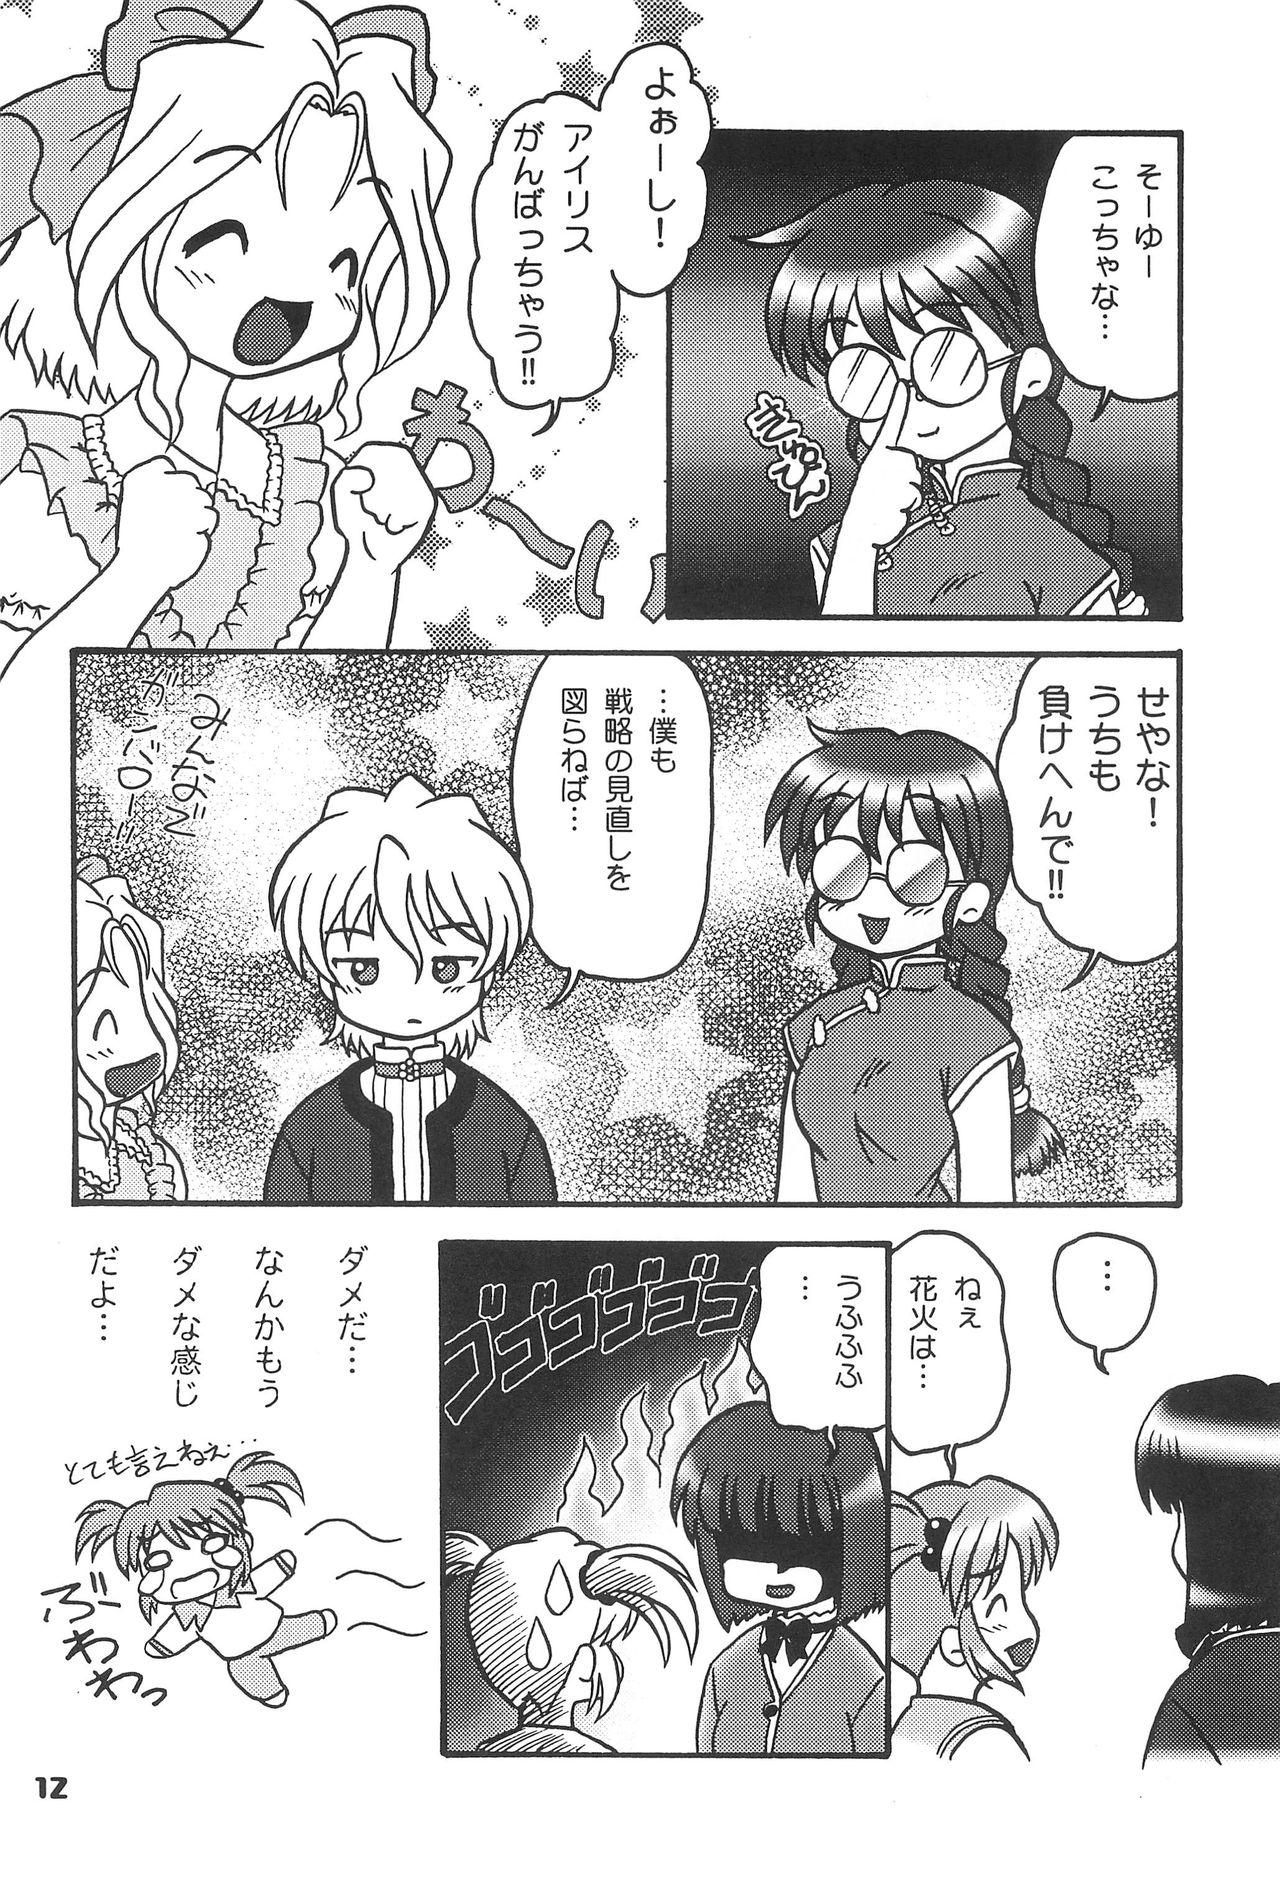 Club Kono Chiisana Mune no Uchi 2 - Sakura taisen Culazo - Page 11